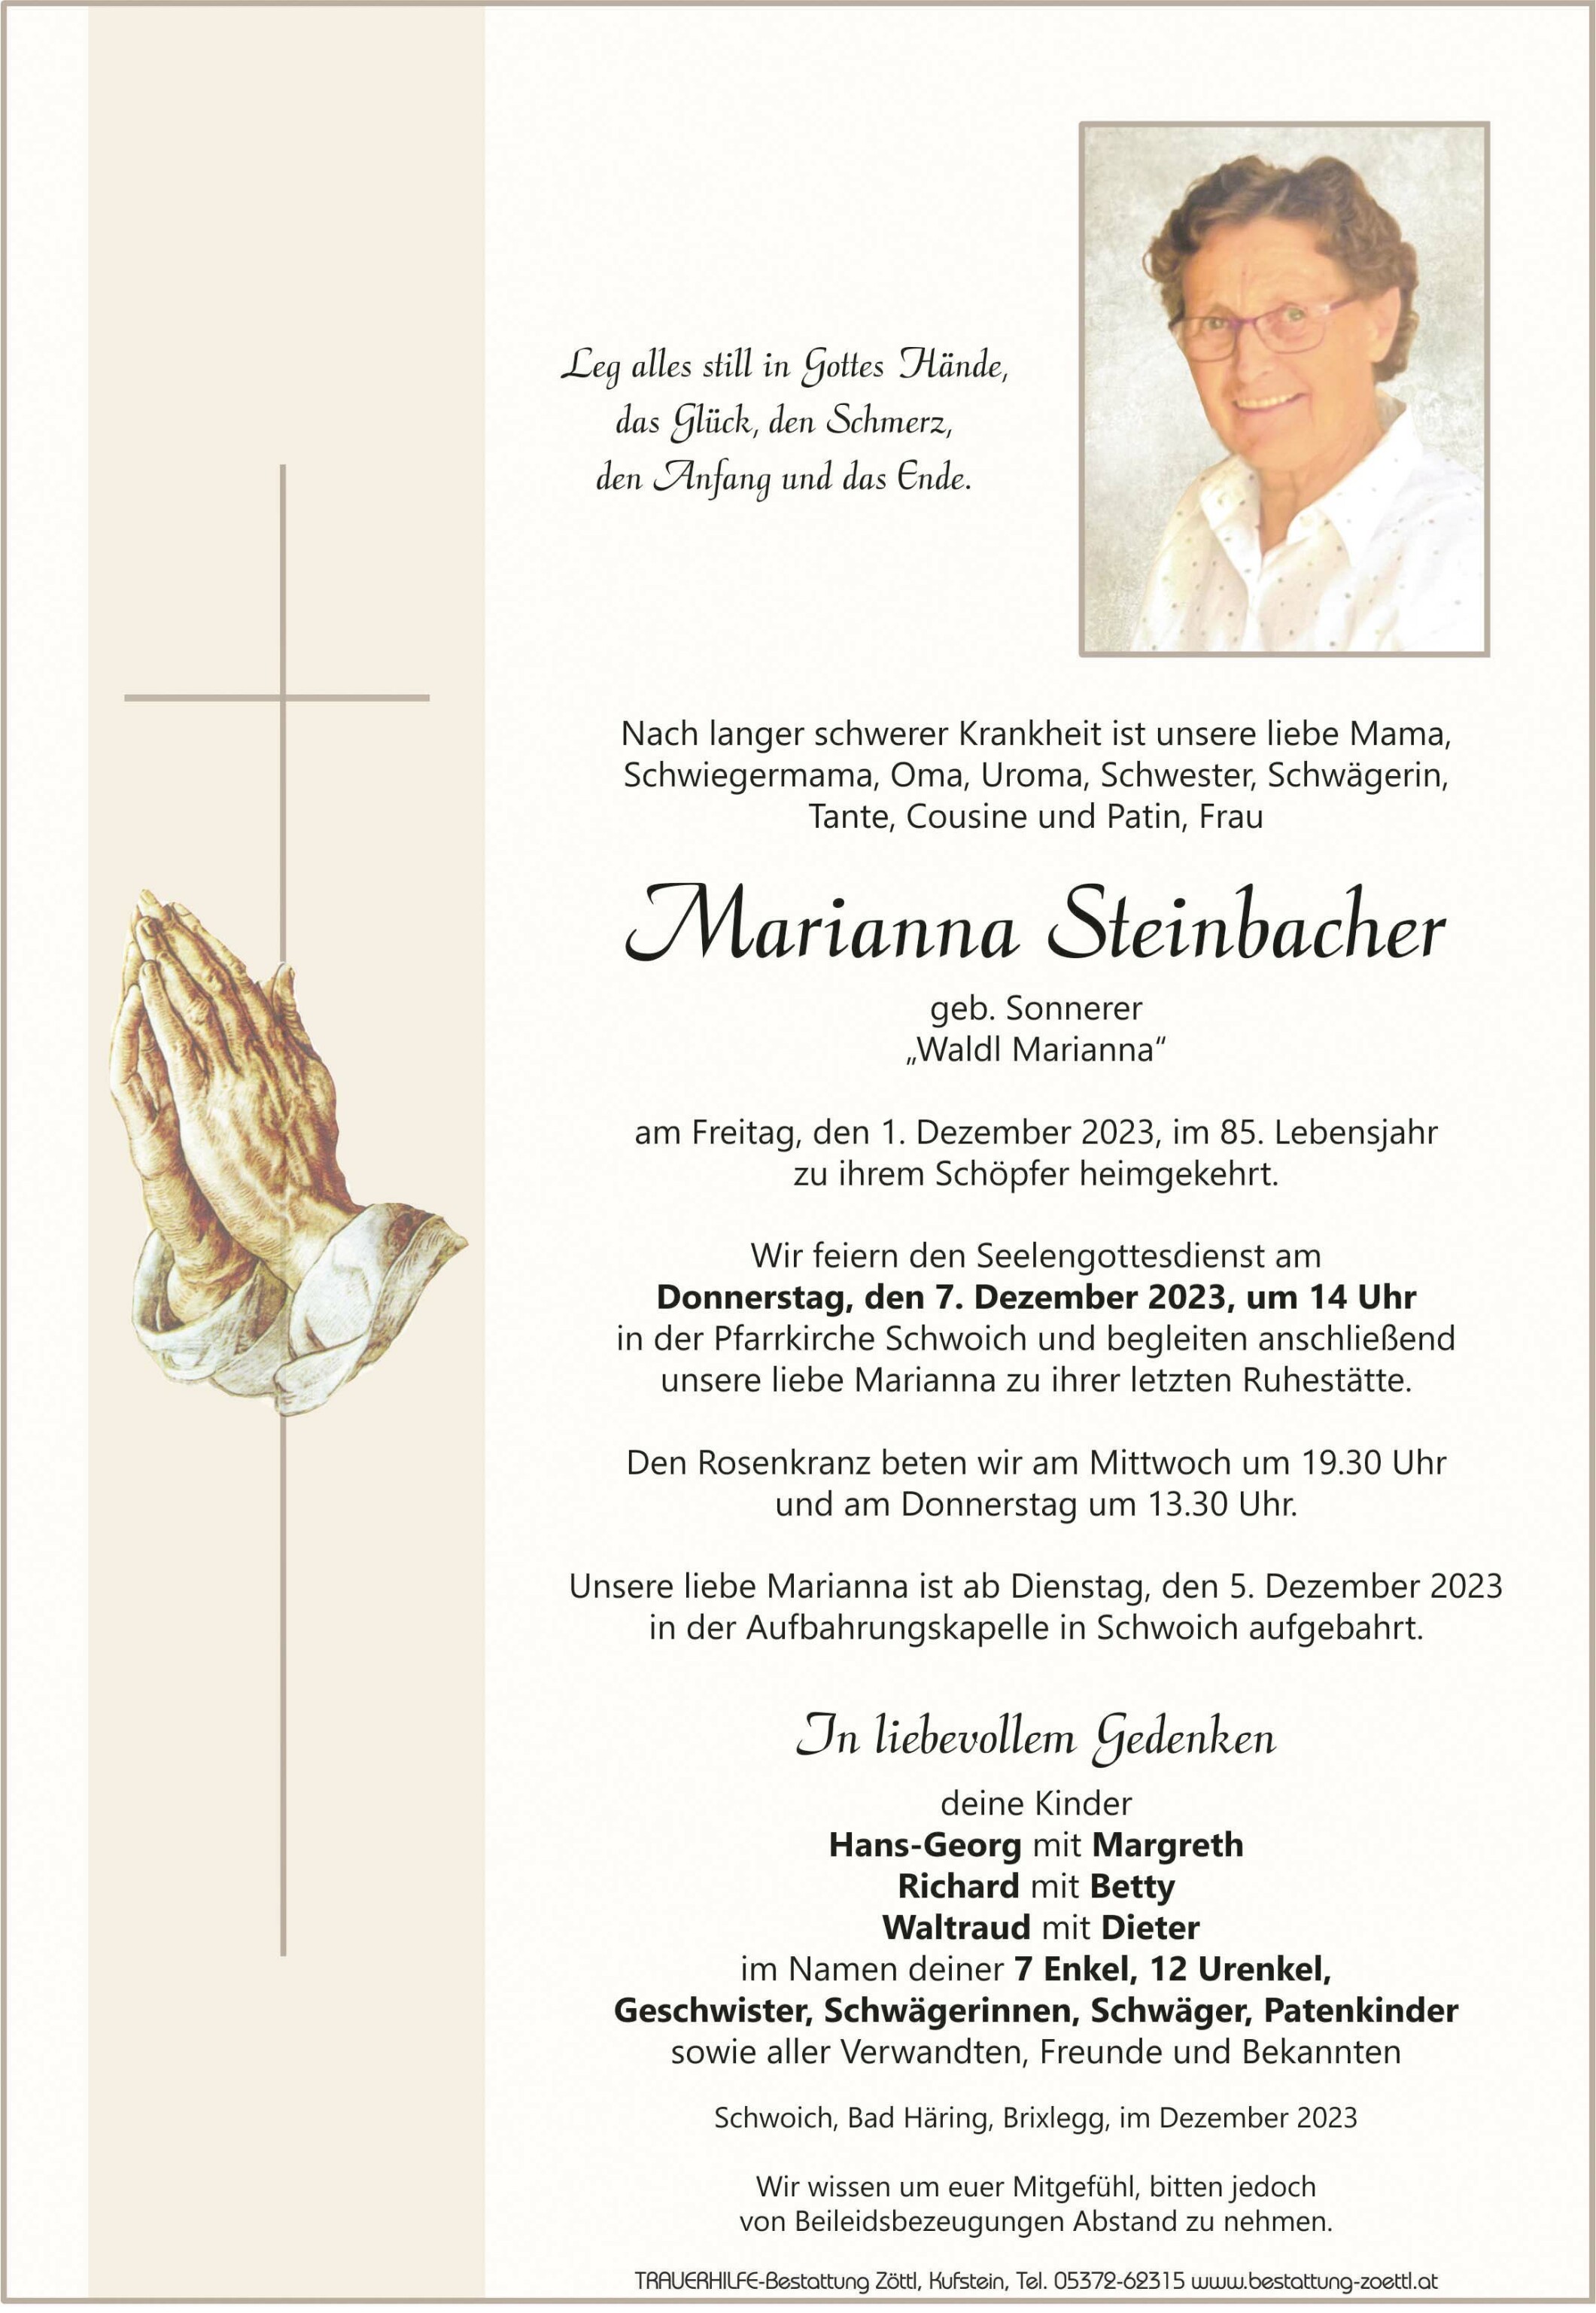 Marianna Steinbacher